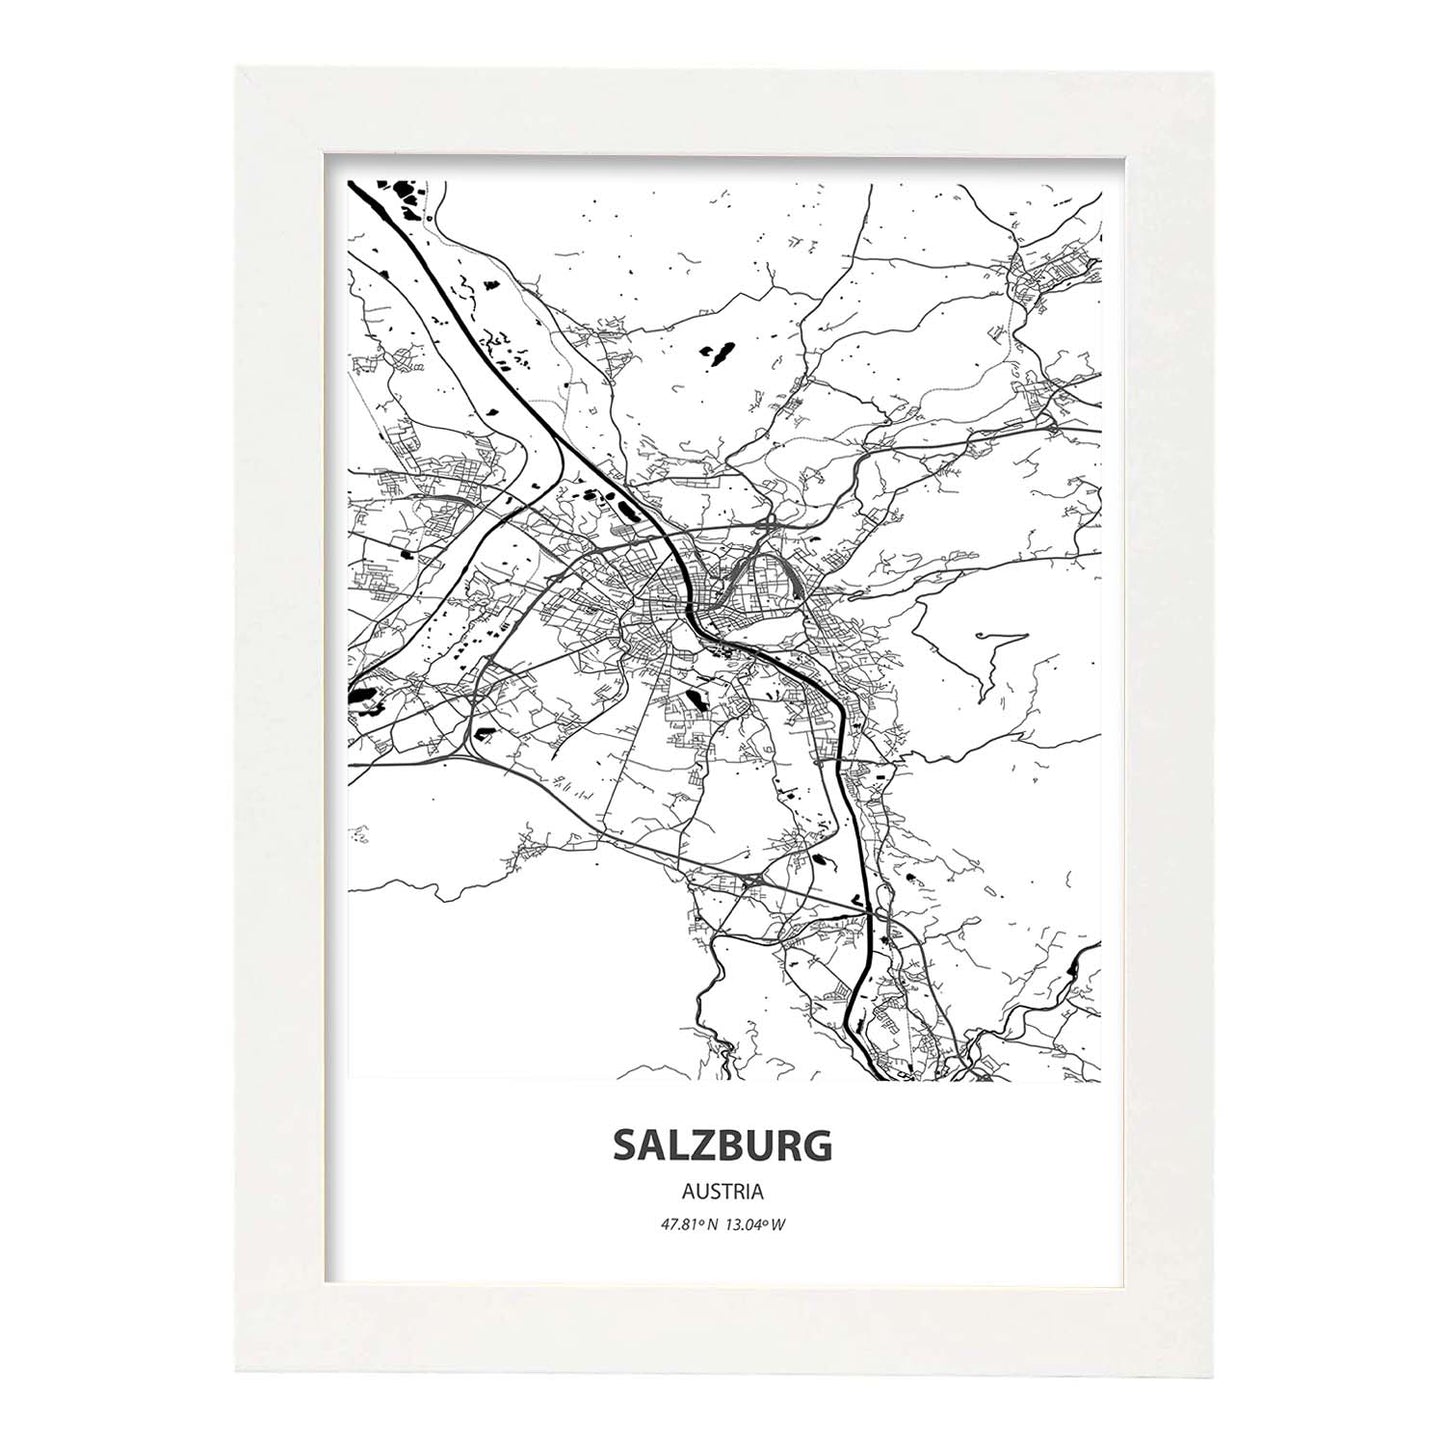 Poster con mapa de Salzburg - Austria. Láminas de ciudades de Europa con mares y ríos en color negro.-Artwork-Nacnic-A3-Marco Blanco-Nacnic Estudio SL